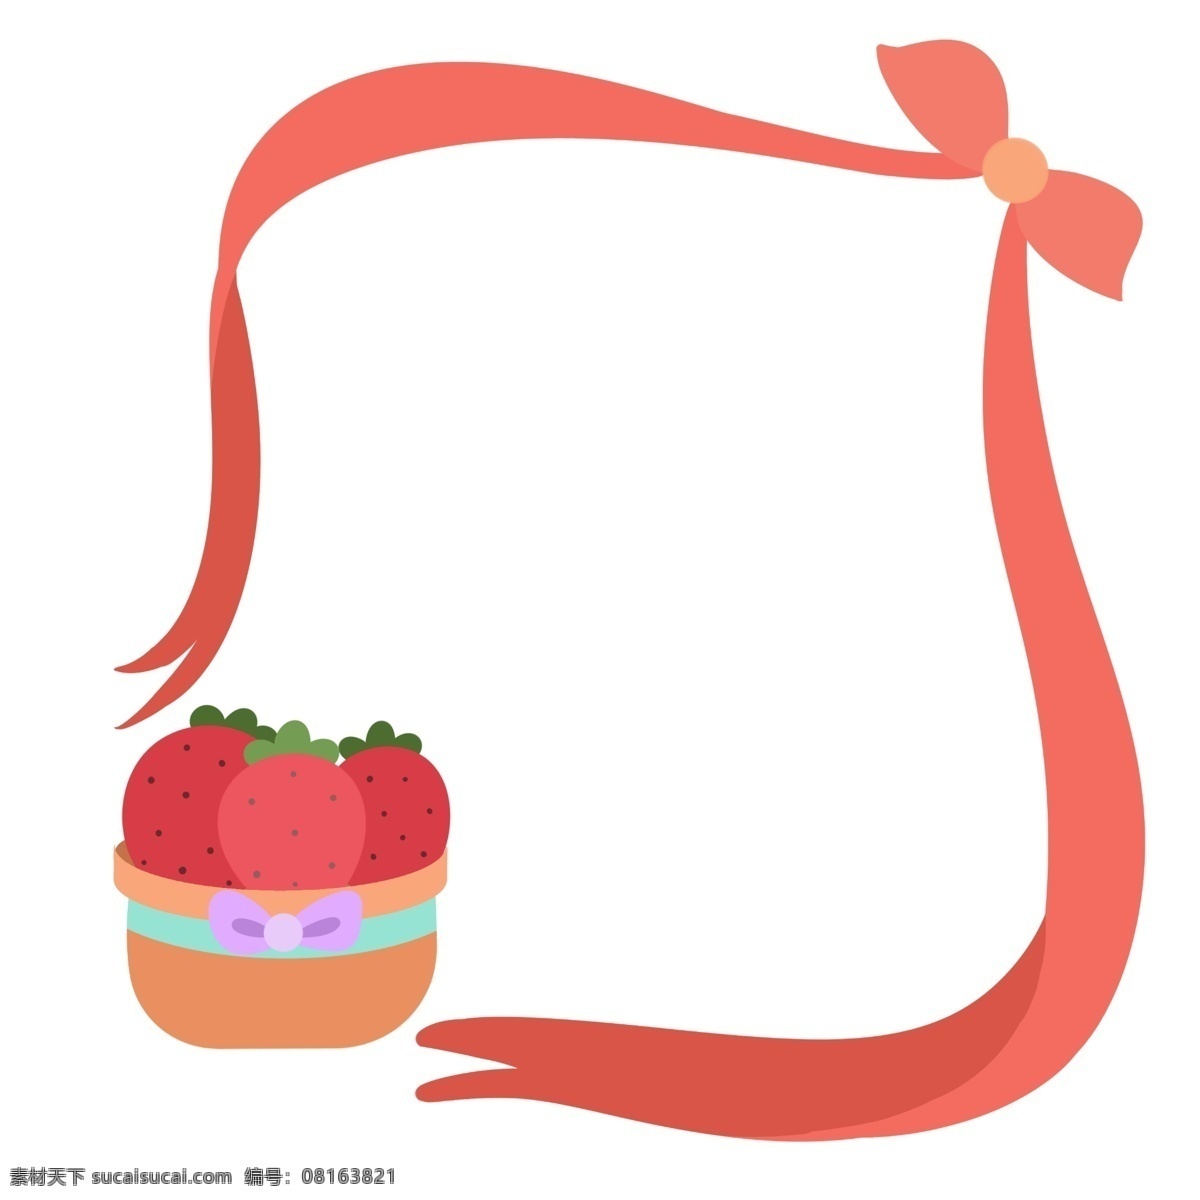 红色 草莓 水果 边框 红色的草莓 卡通边框 小物边框 漂亮的边框 美丽的边框 创意边框 红色的丝绸